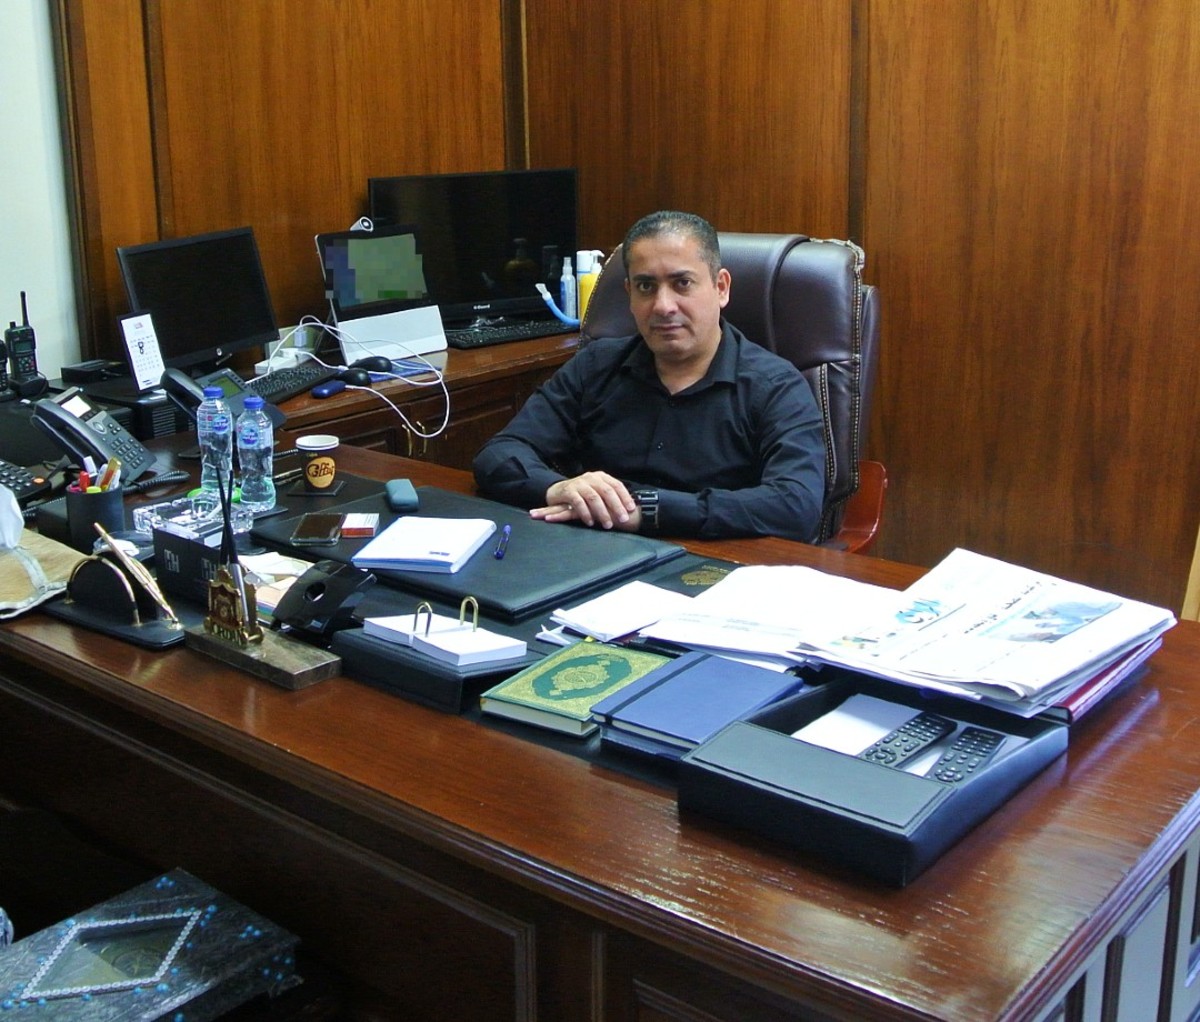 Jordanian man sitting at desk